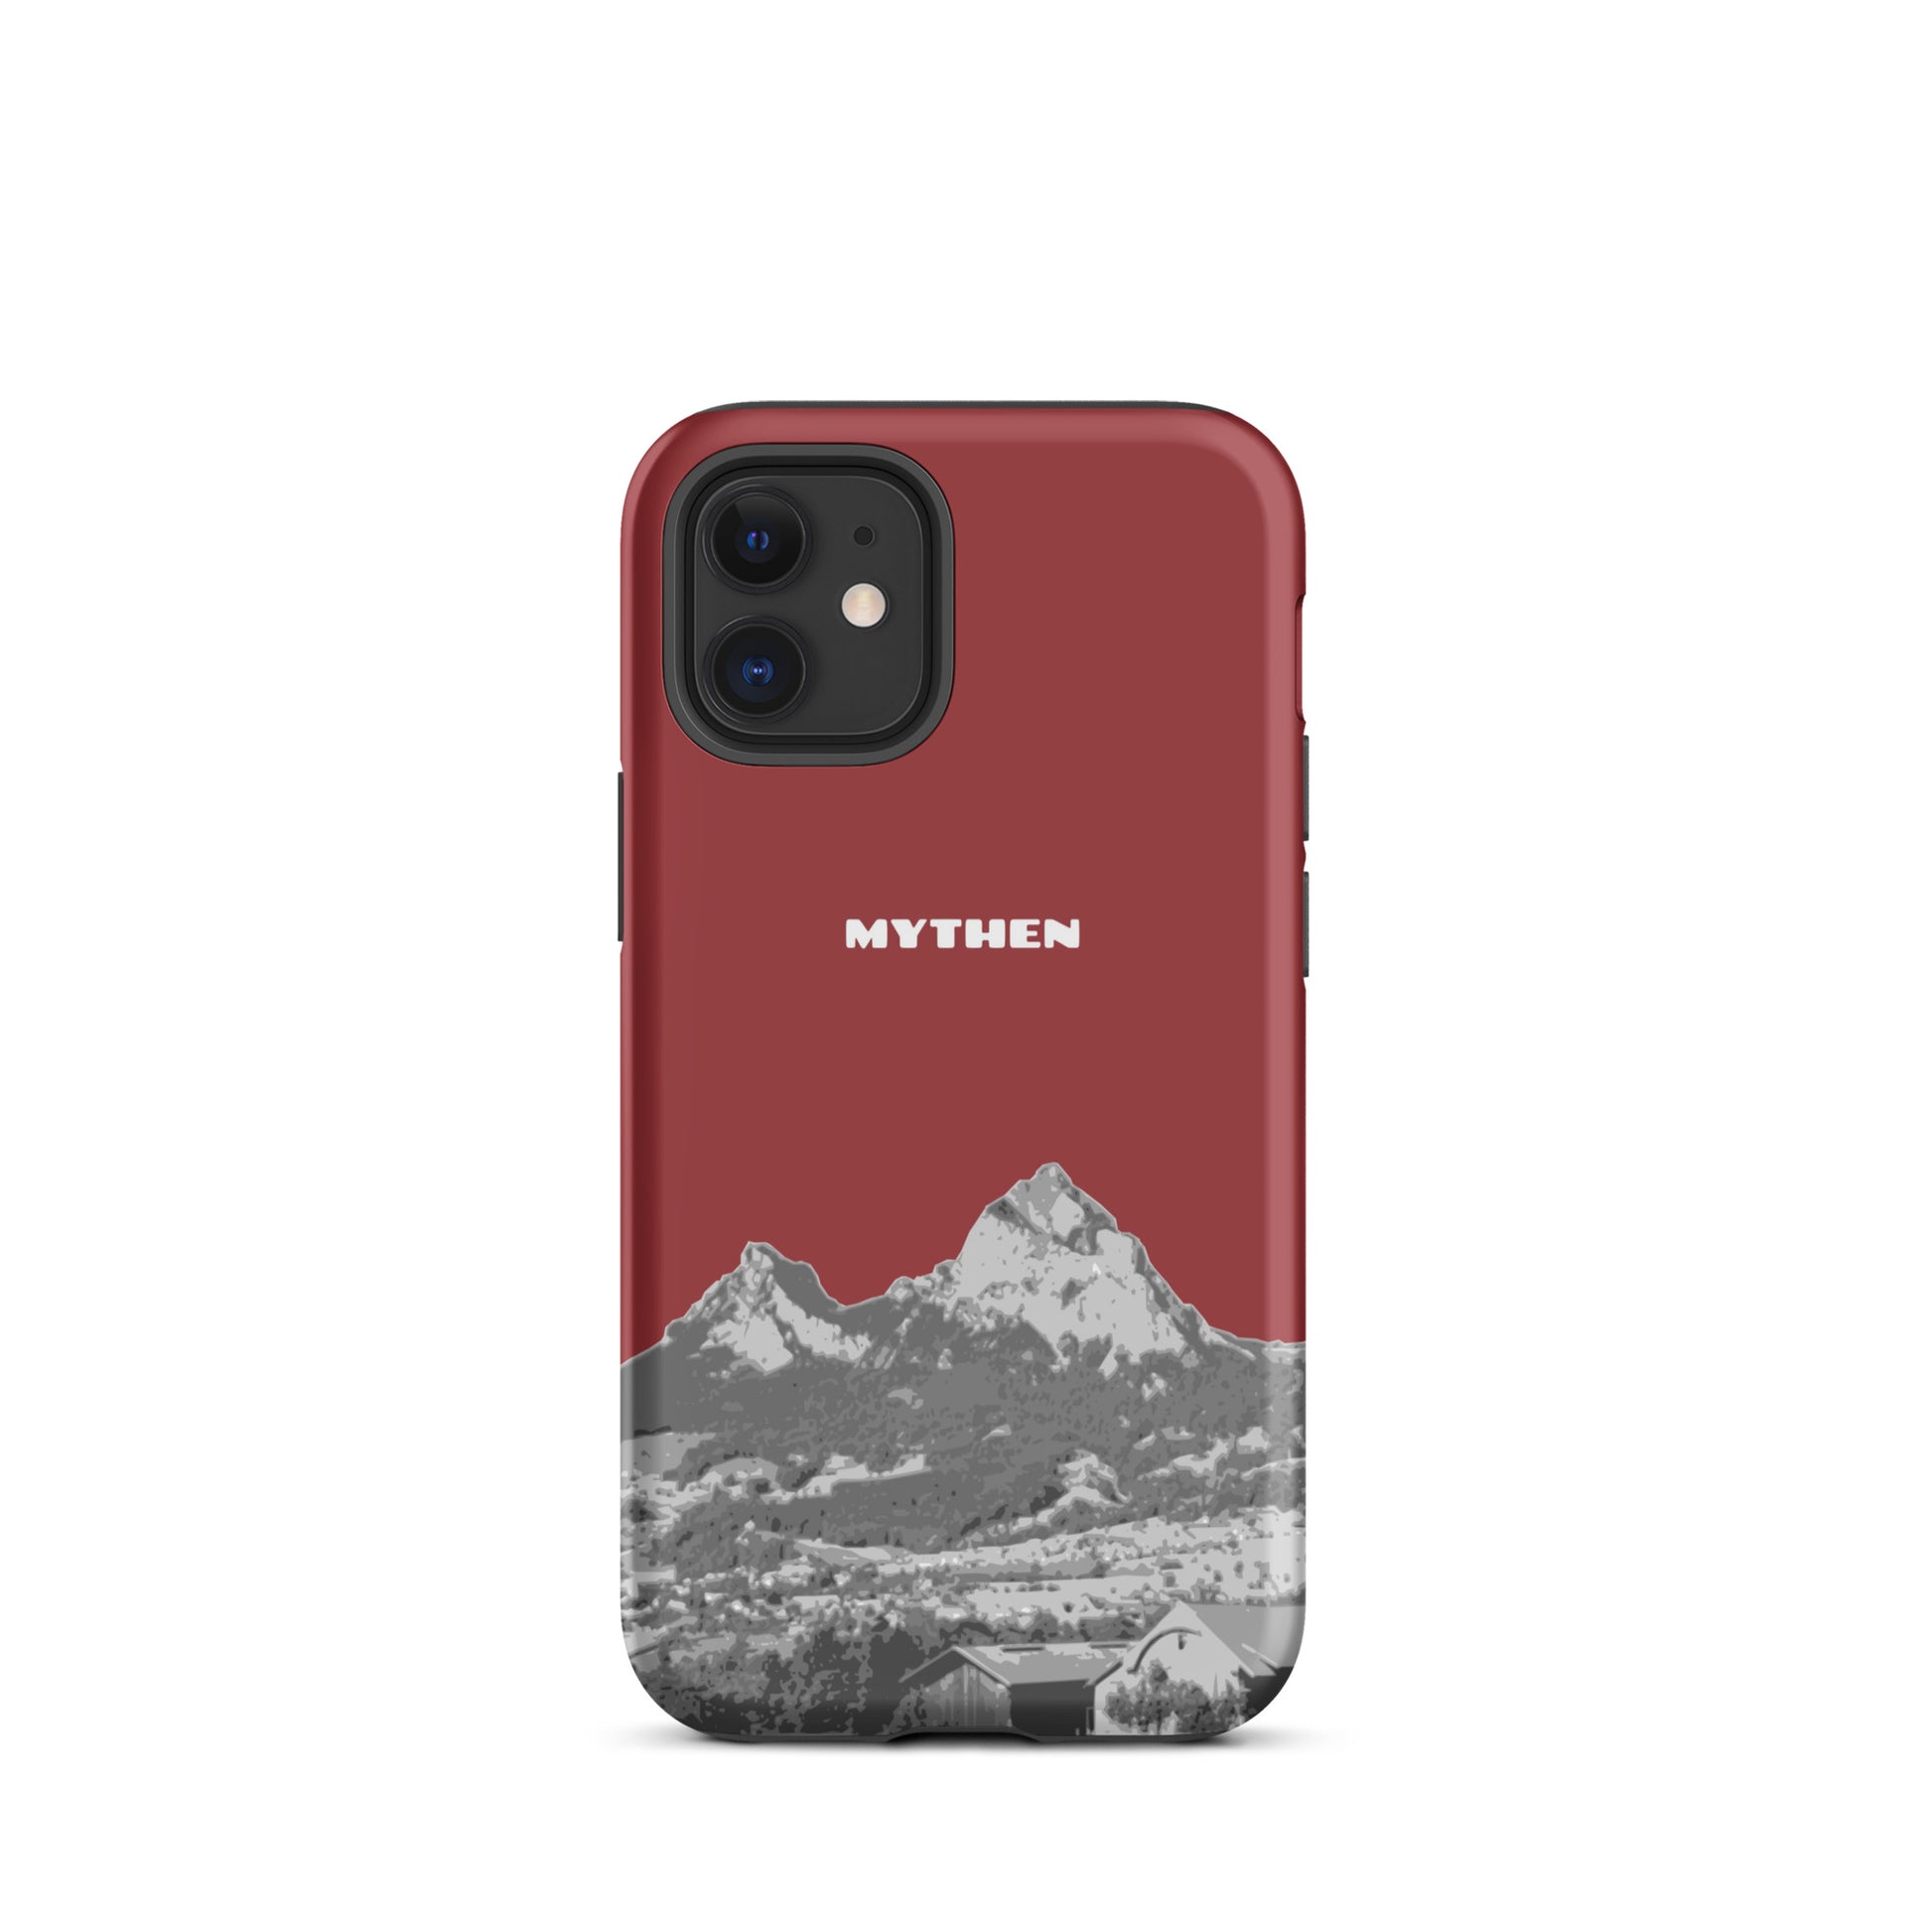 Hülle für das iPhone 12 mini von Apple in der Farbe Rot, die den Grossen Mythen und den Kleinen Mythen bei Schwyz zeigt. 